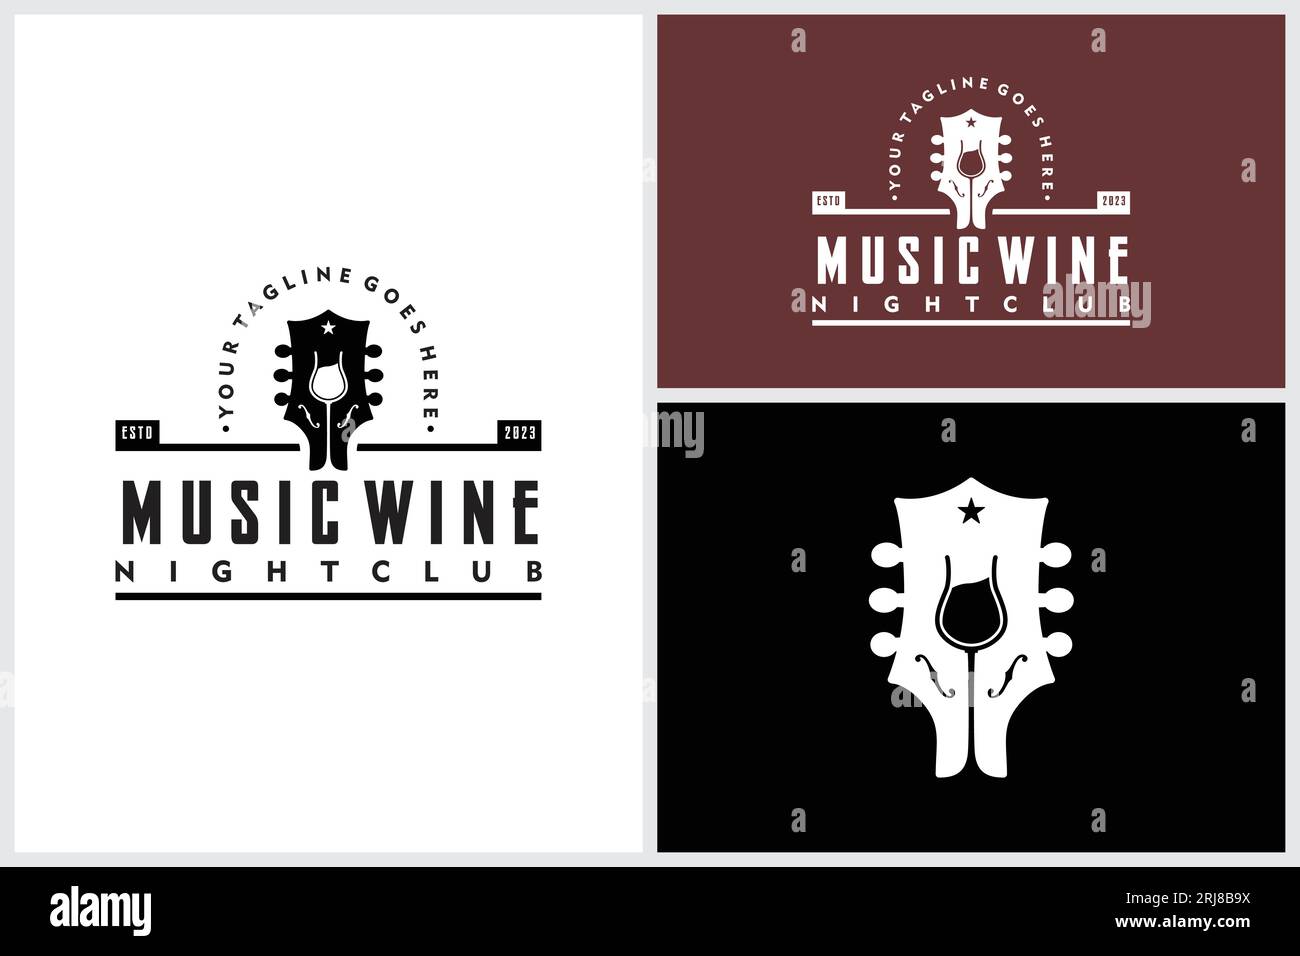 Concerto di musica dal vivo per chitarra con bicchiere di vino per Bar Cafe Restaurant Nightclub con logo Vintage Label Illustrazione Vettoriale